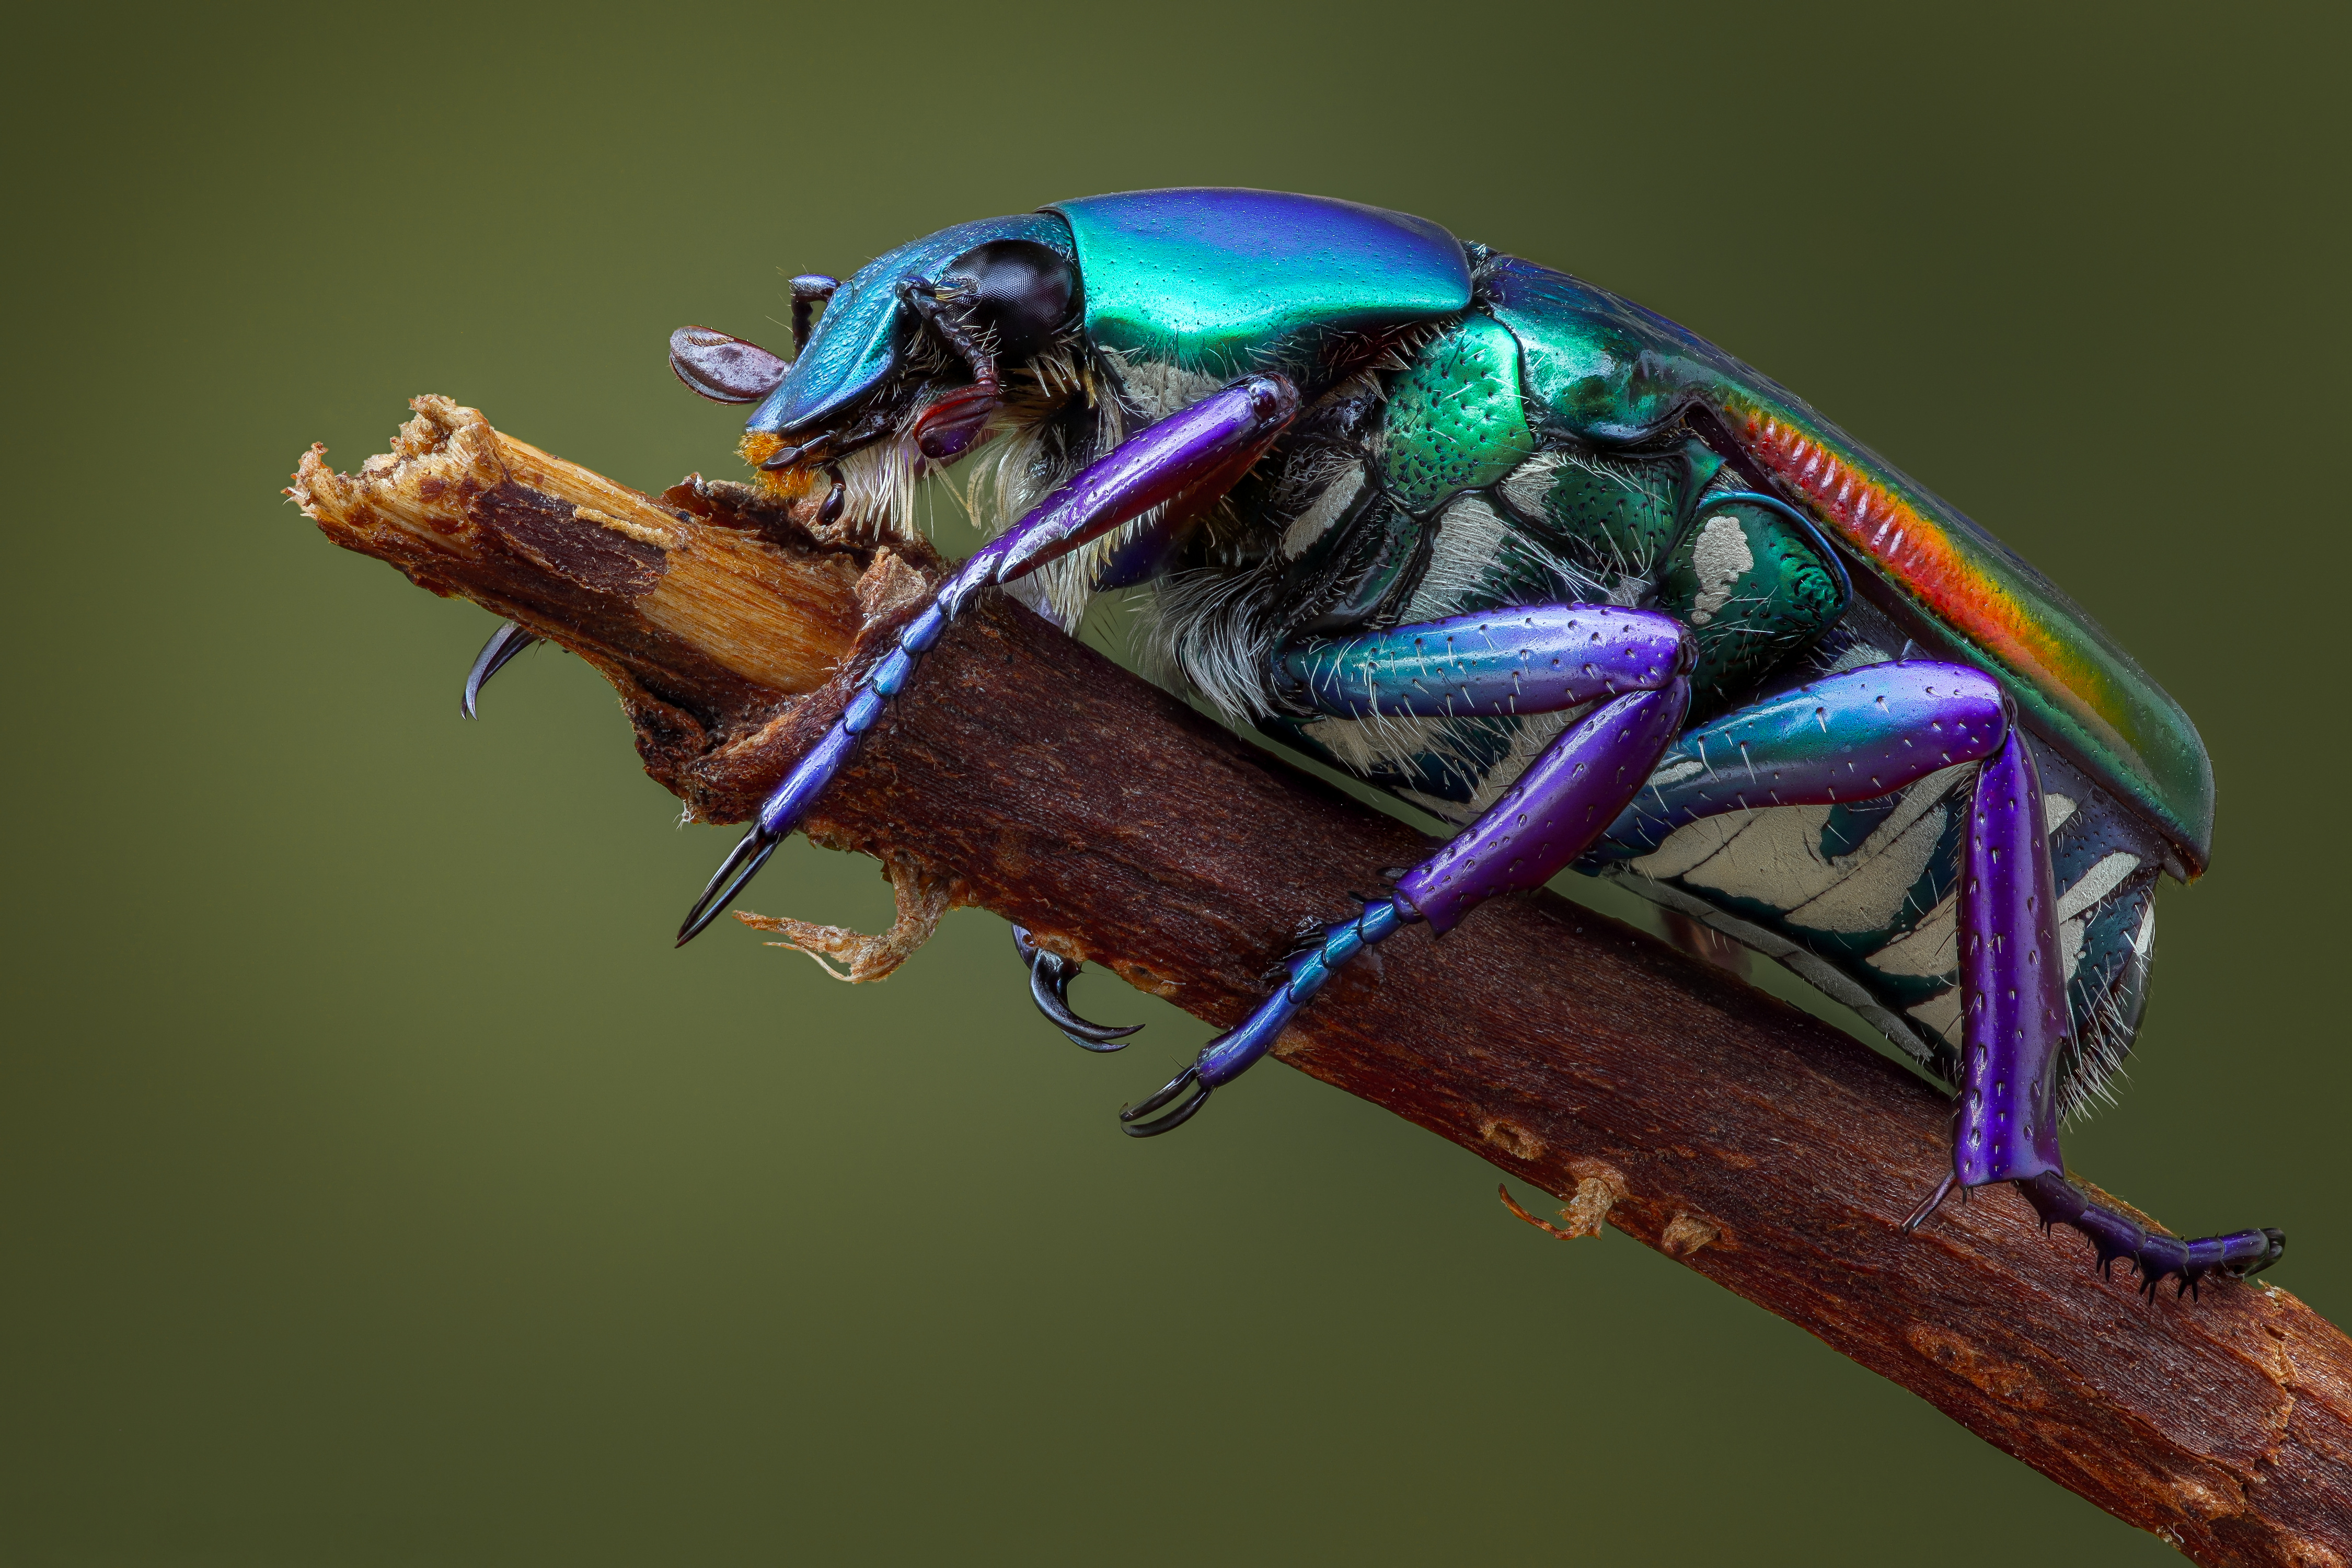 Immagini Insetti Coleotteri pygora sanguineomarginata Animali Da vicino 4500x3000 insecta coleoptera animale